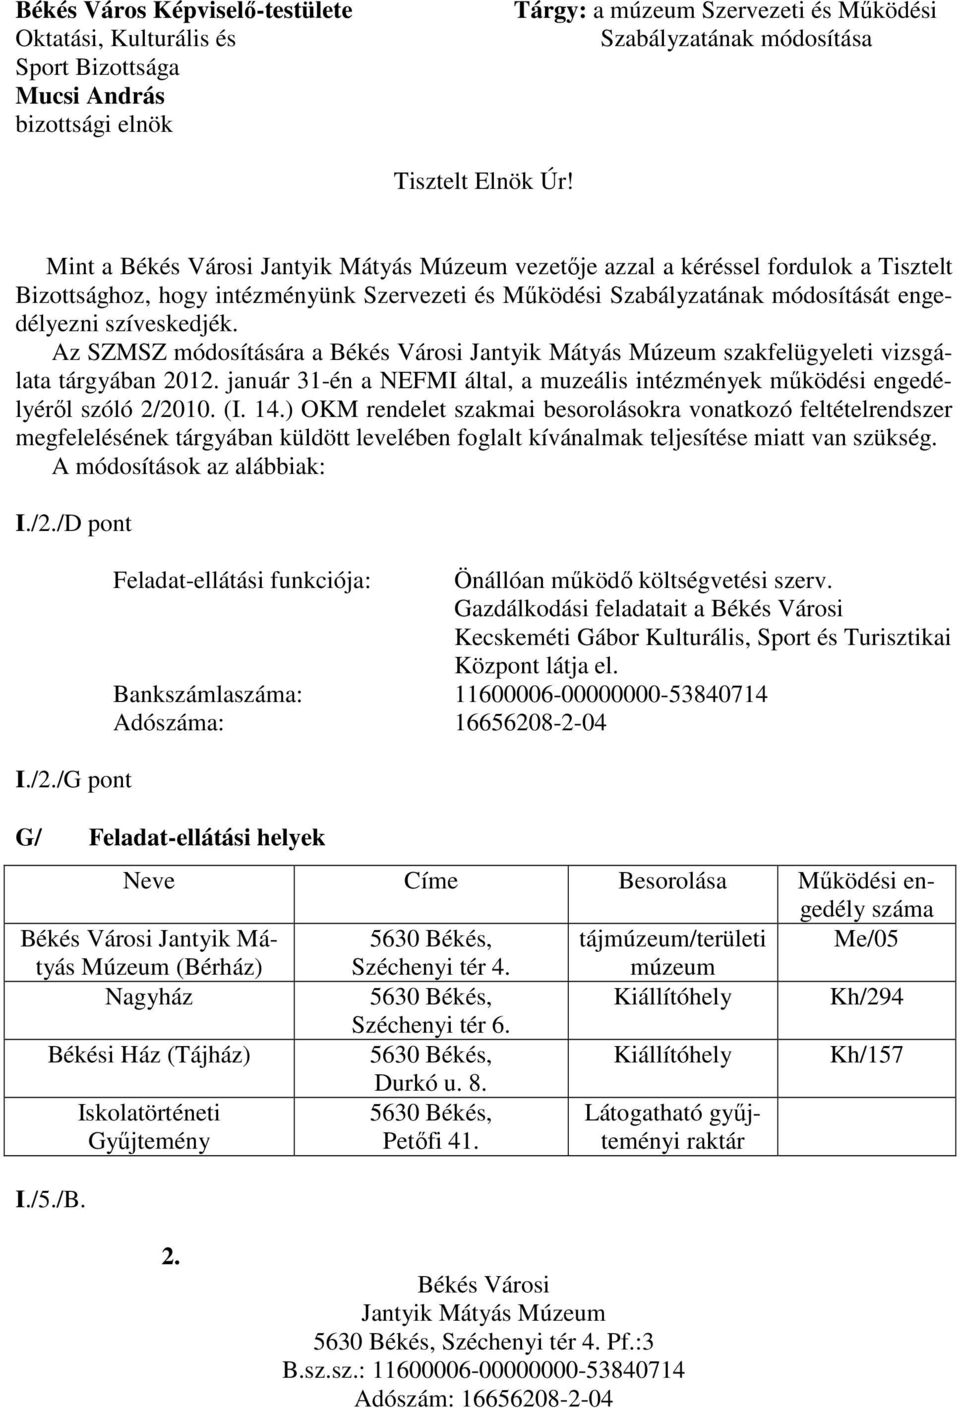 Az SZMSZ módosítására a Békés Városi Jantyik Mátyás Múzeum szakfelügyeleti vizsgálata tárgyában 2012. január 31-én a NEFMI által, a muzeális intézmények működési engedélyéről szóló 2/2010. (I. 14.